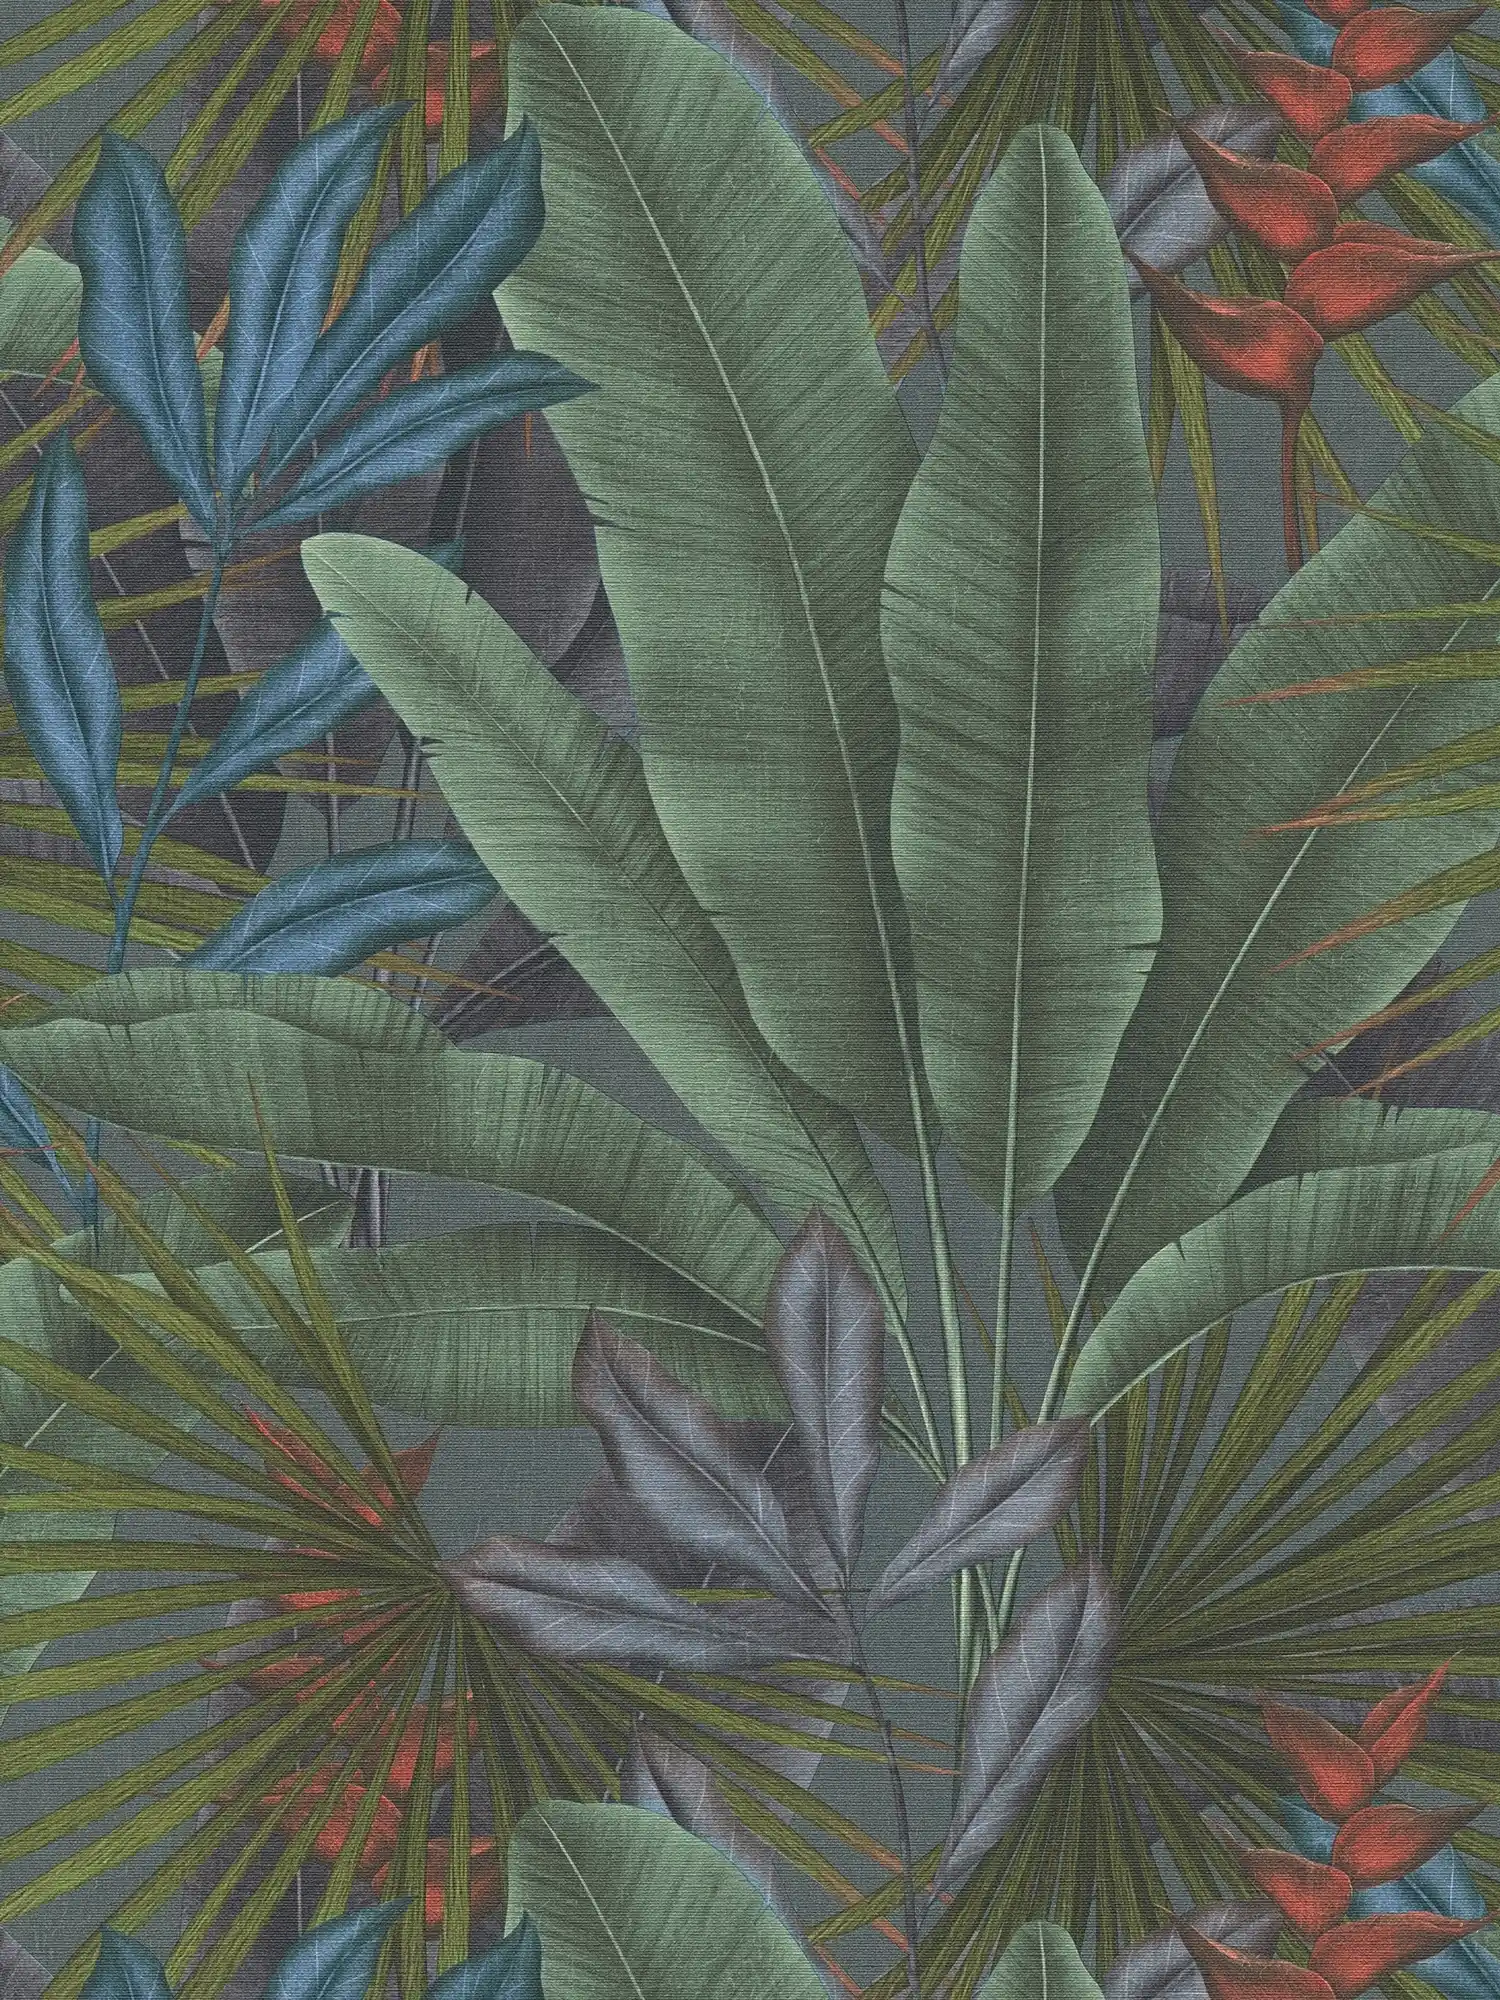 Vliestapete mit Dschungelblätter- Bemusterung und bunten Akzenten – grau, Grün, Rot
